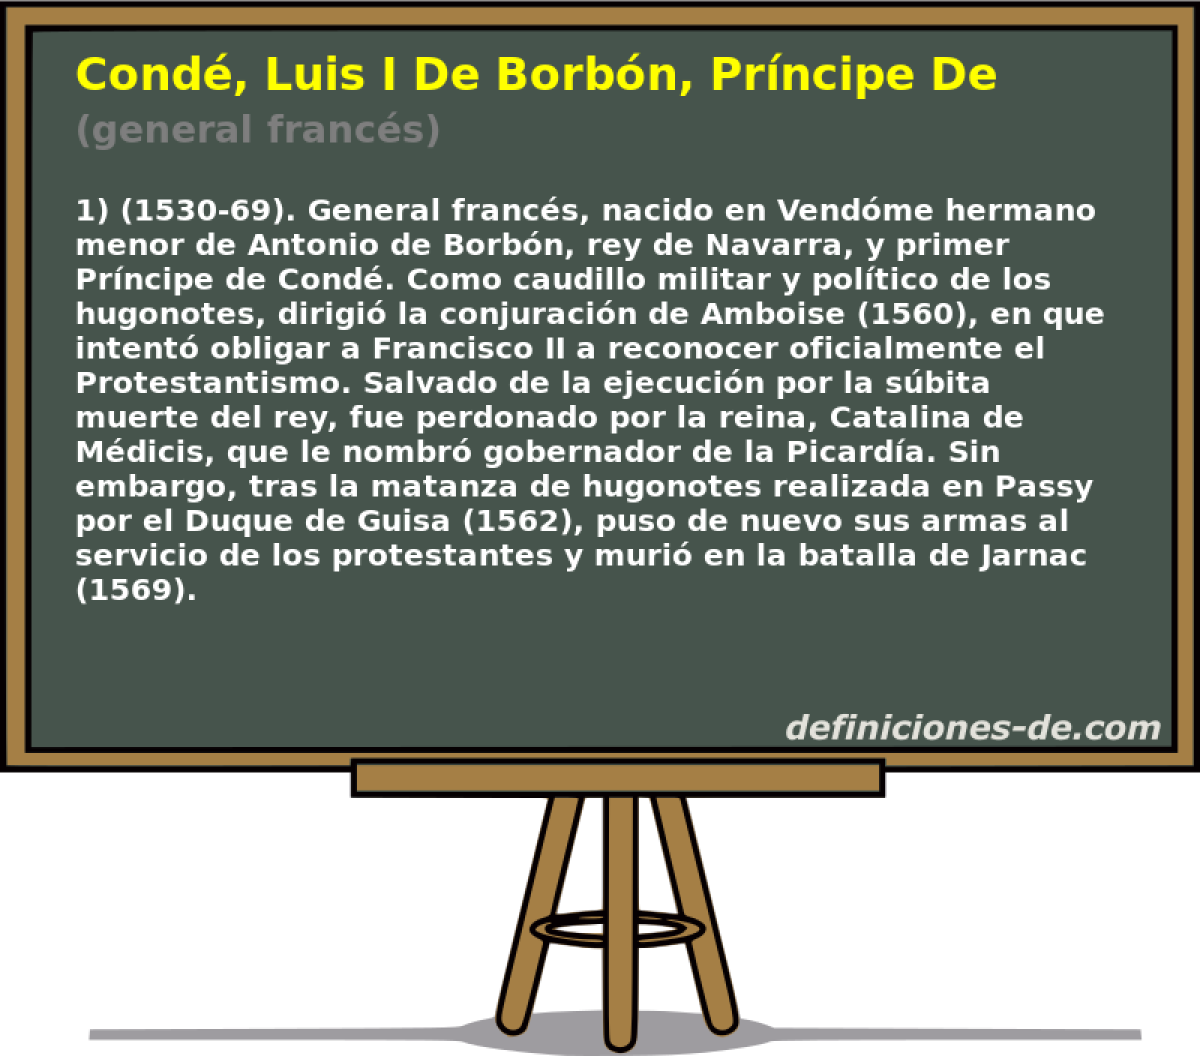 Cond�, Luis I De Borb�n, Pr�ncipe De (general franc�s)